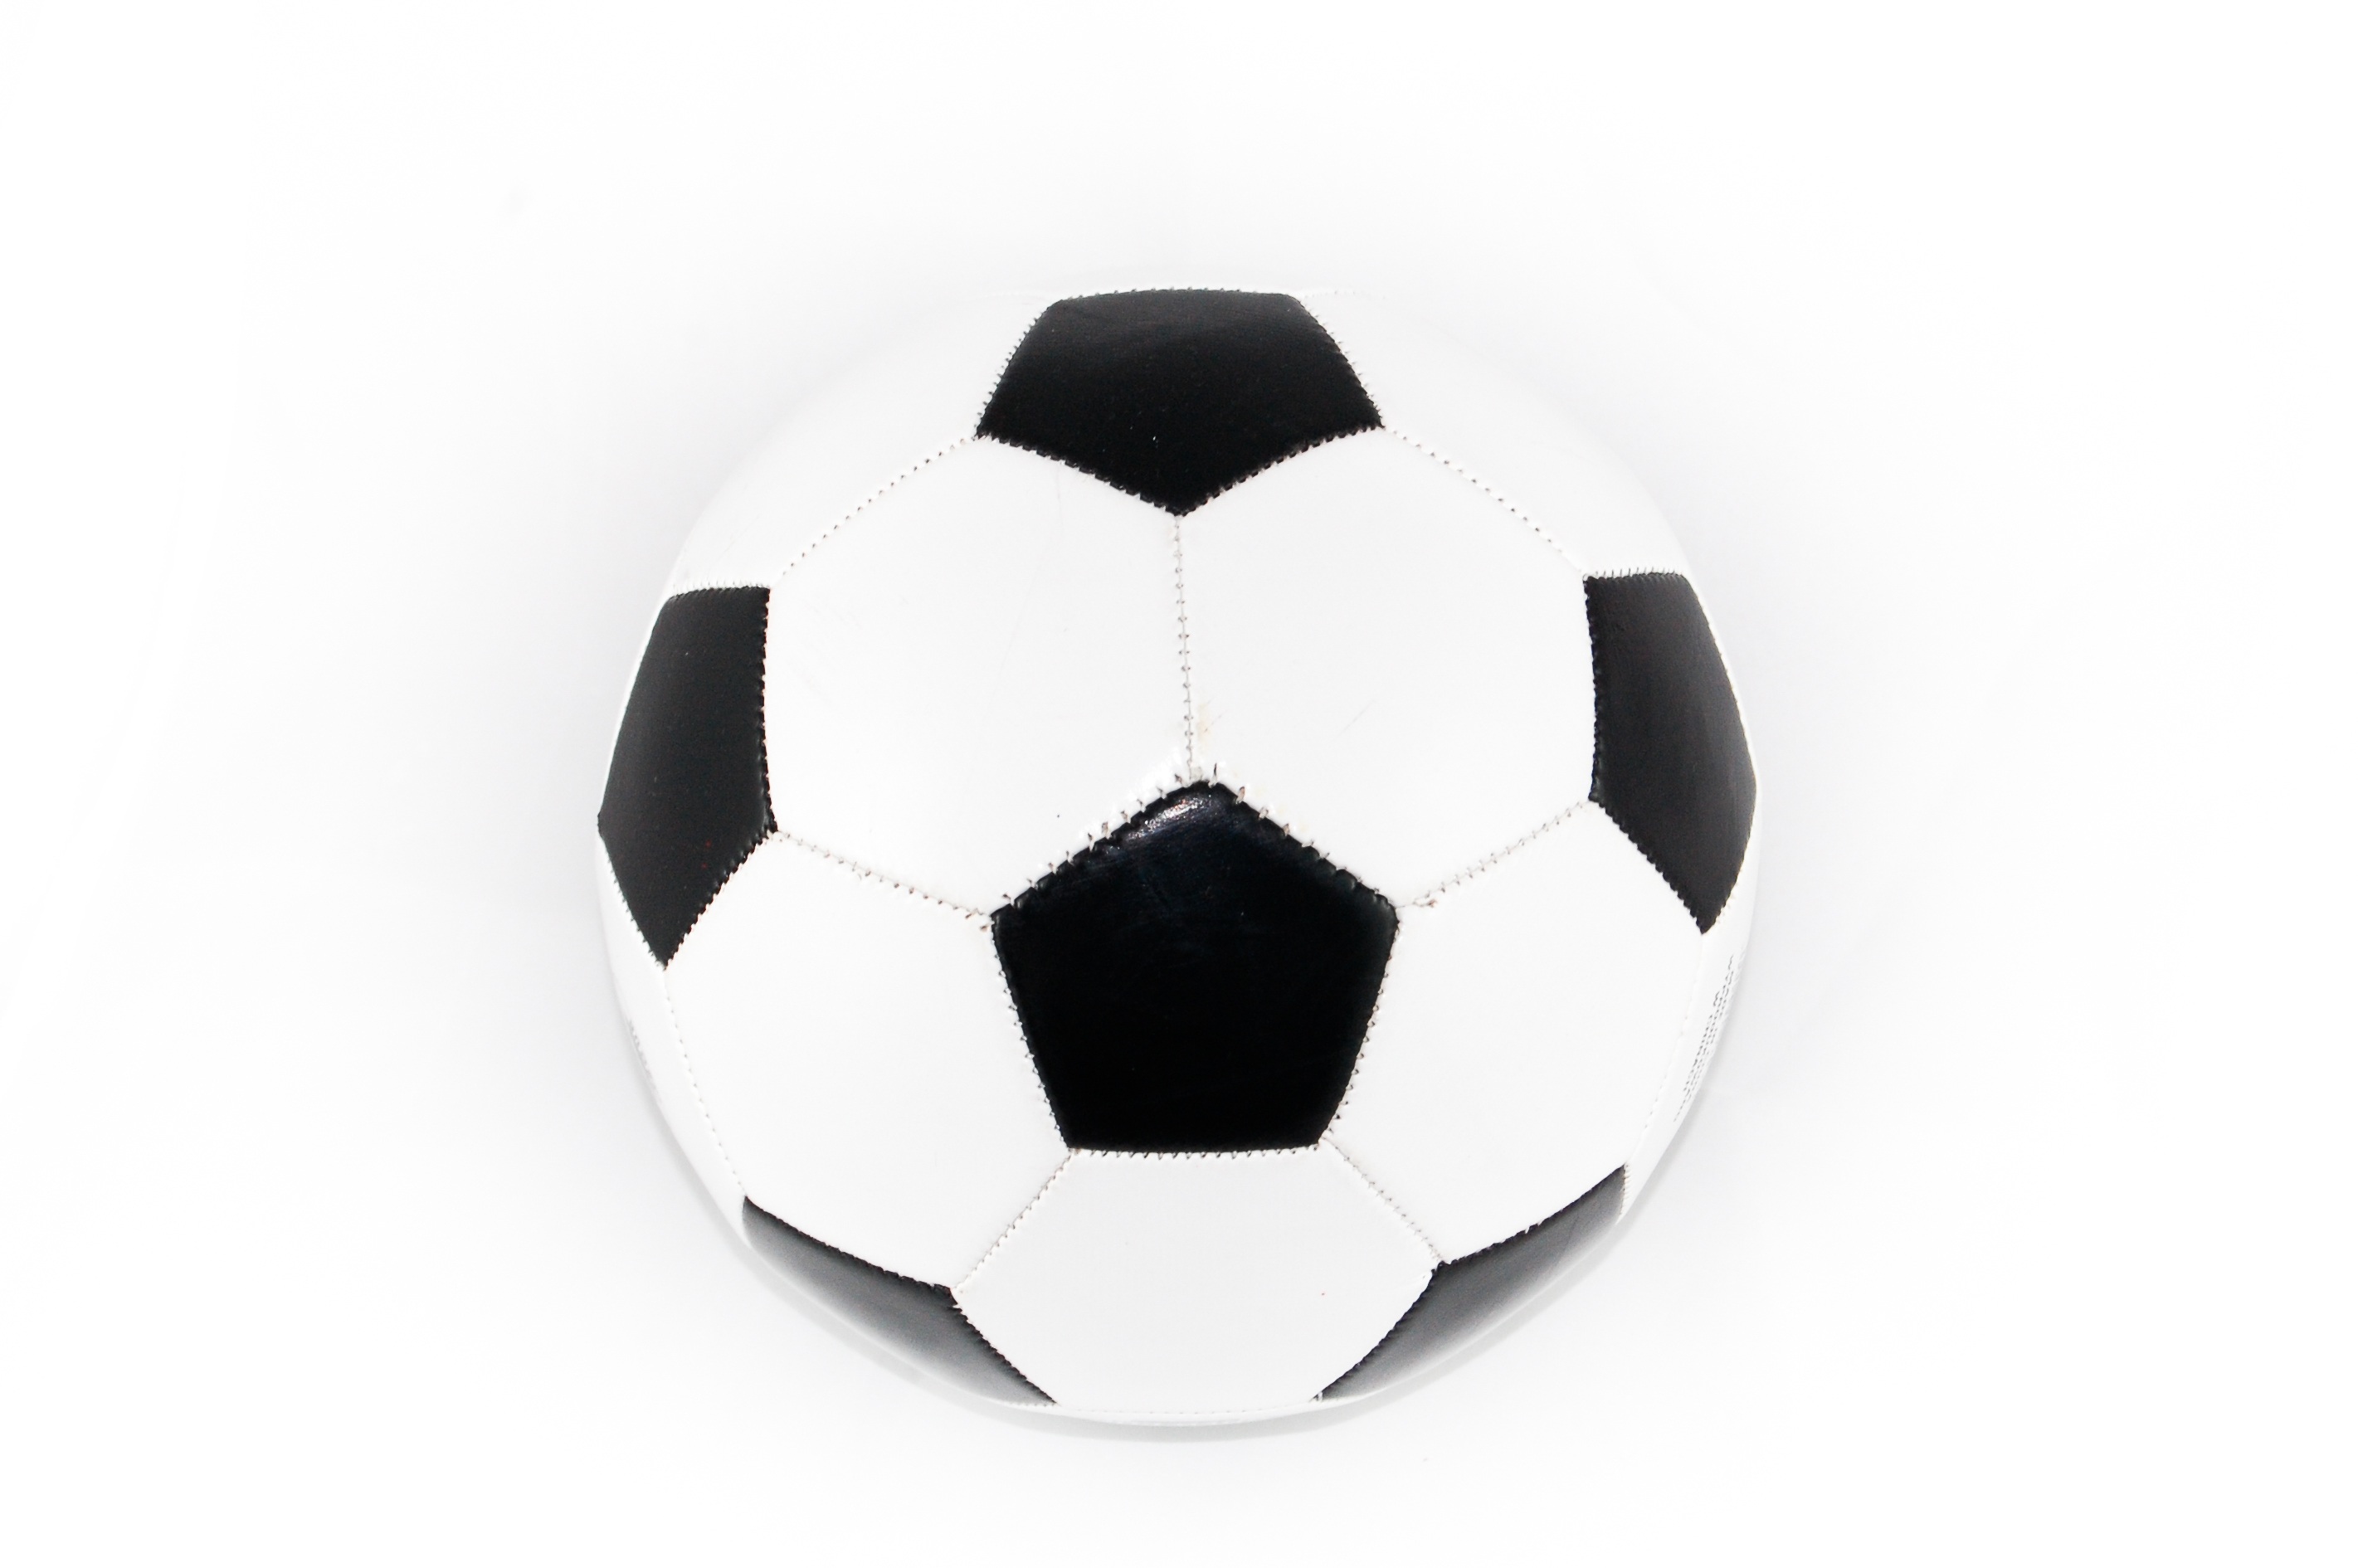 117301 descargar imagen deportes, fútbol, fondo blanco, balón de fútbol: fondos de pantalla y protectores de pantalla gratis